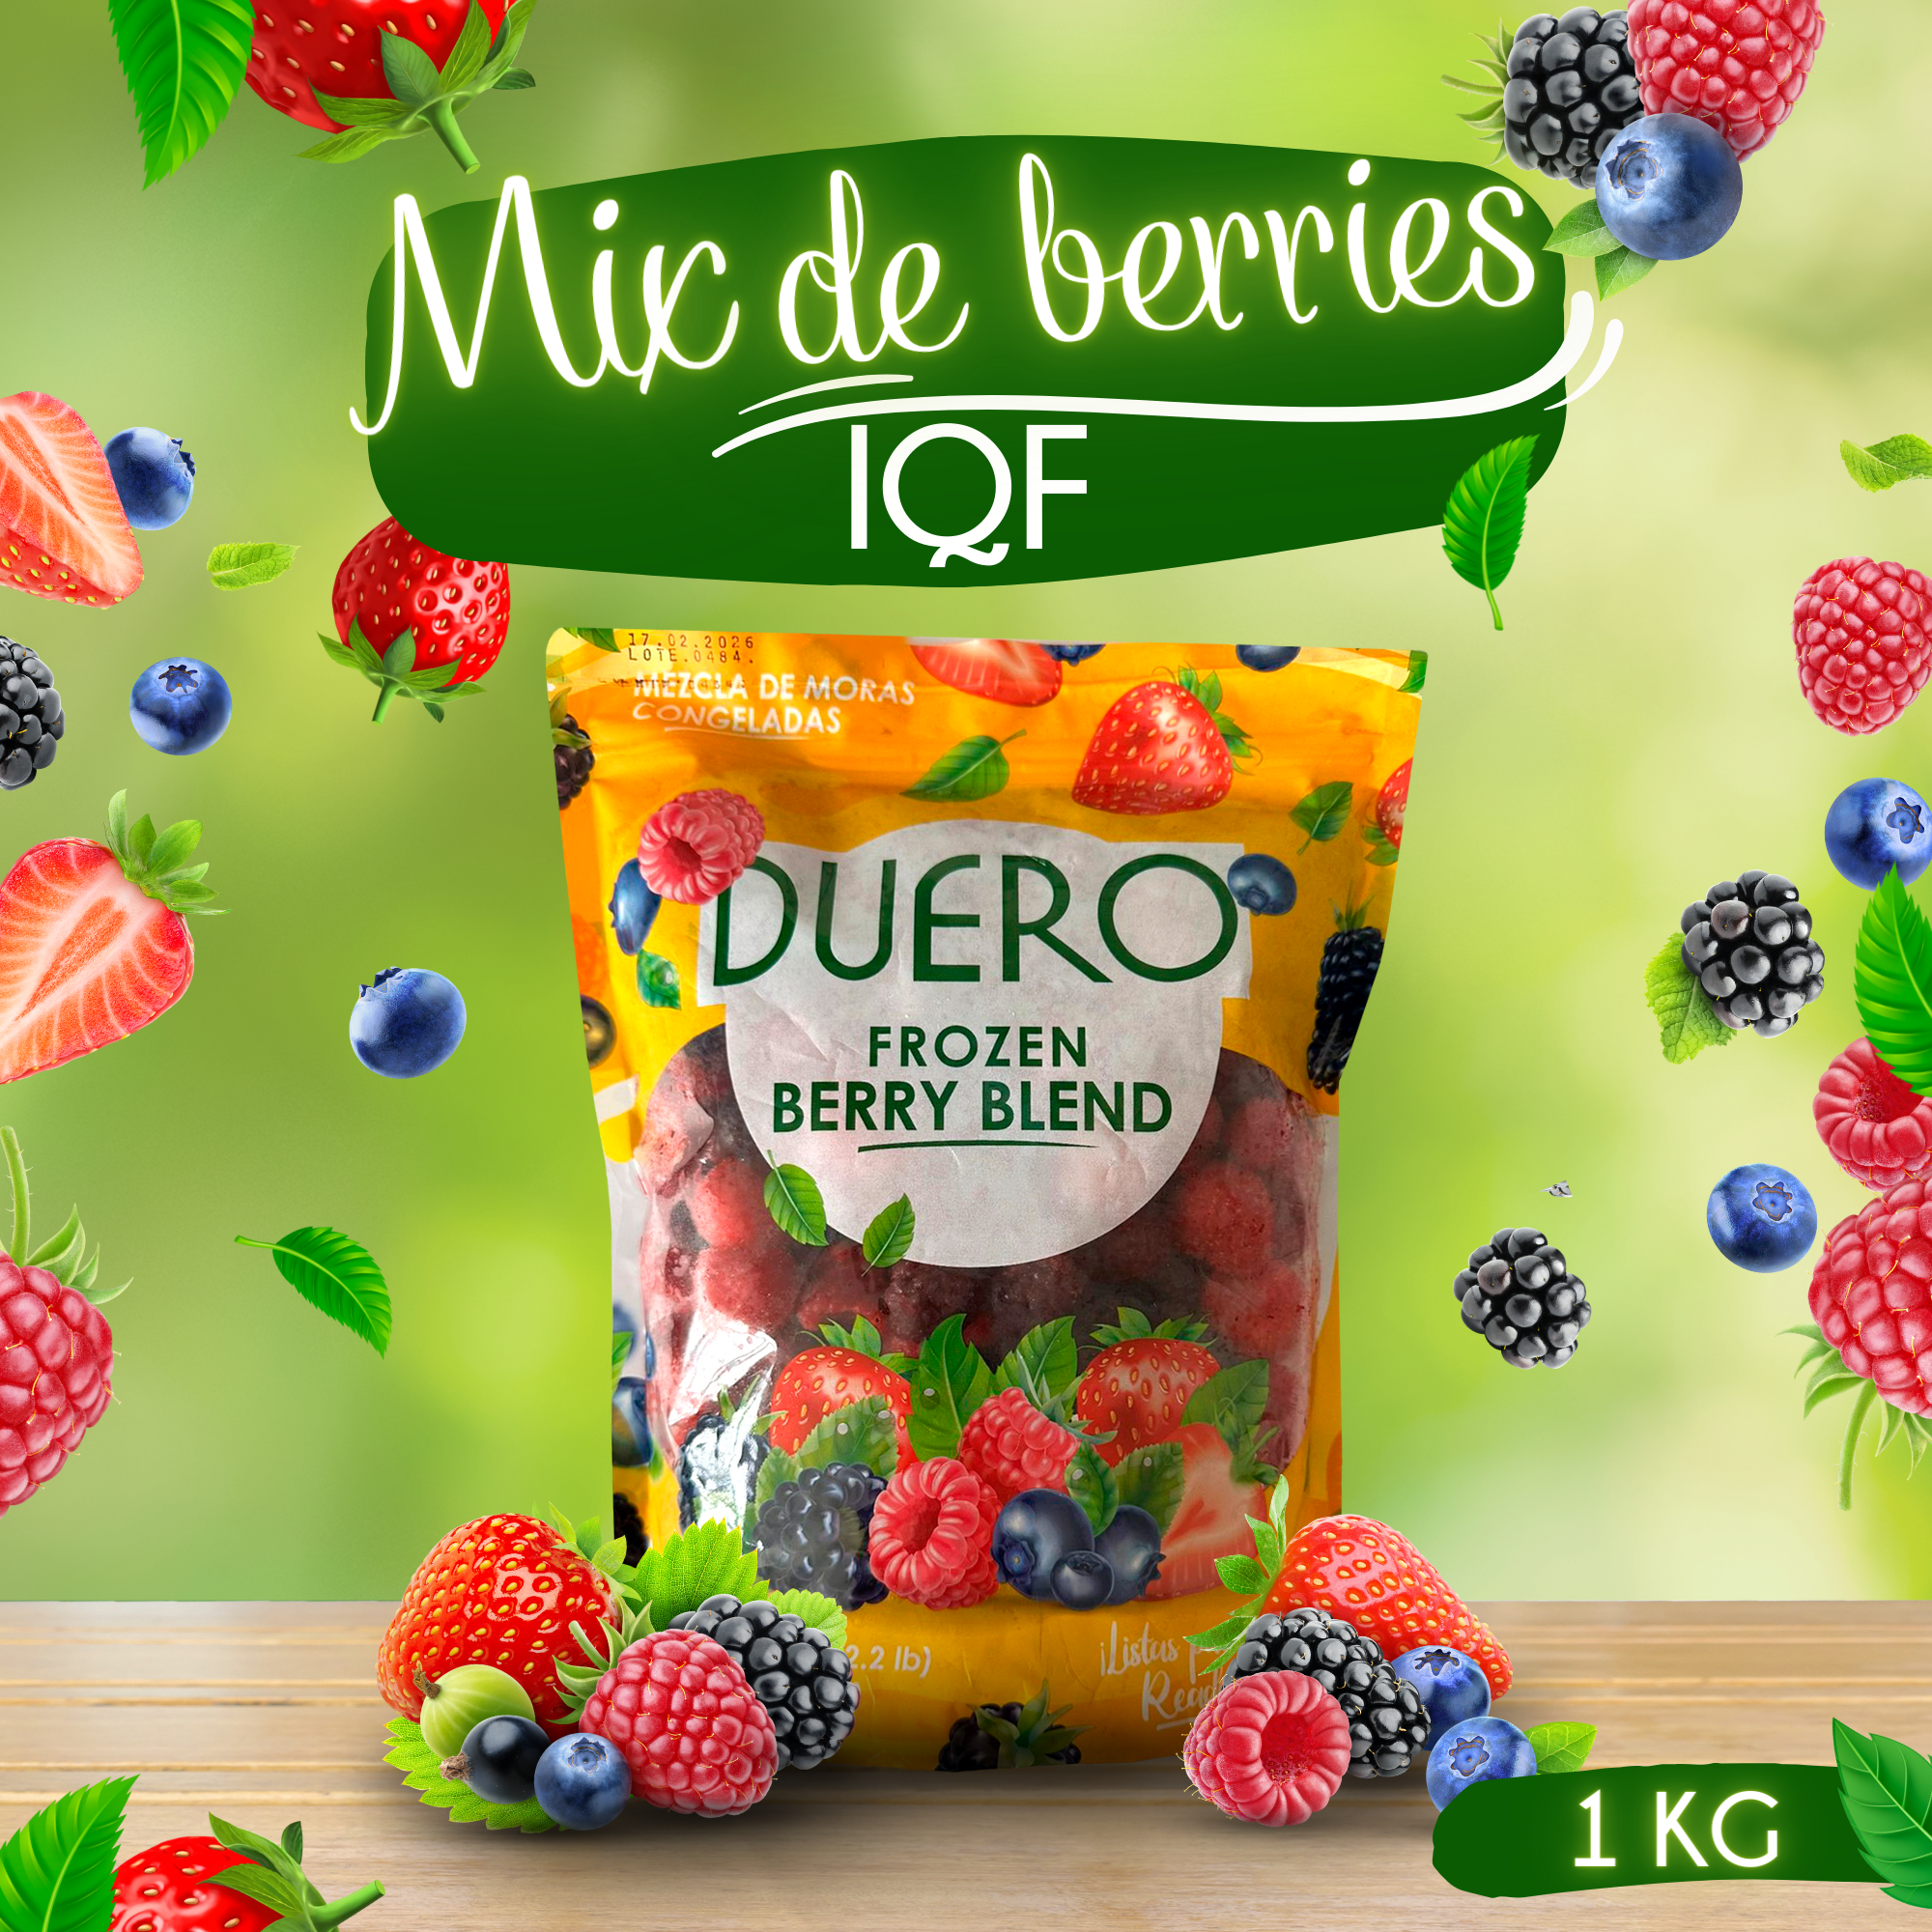 Productos inicio - mix de berries IQF